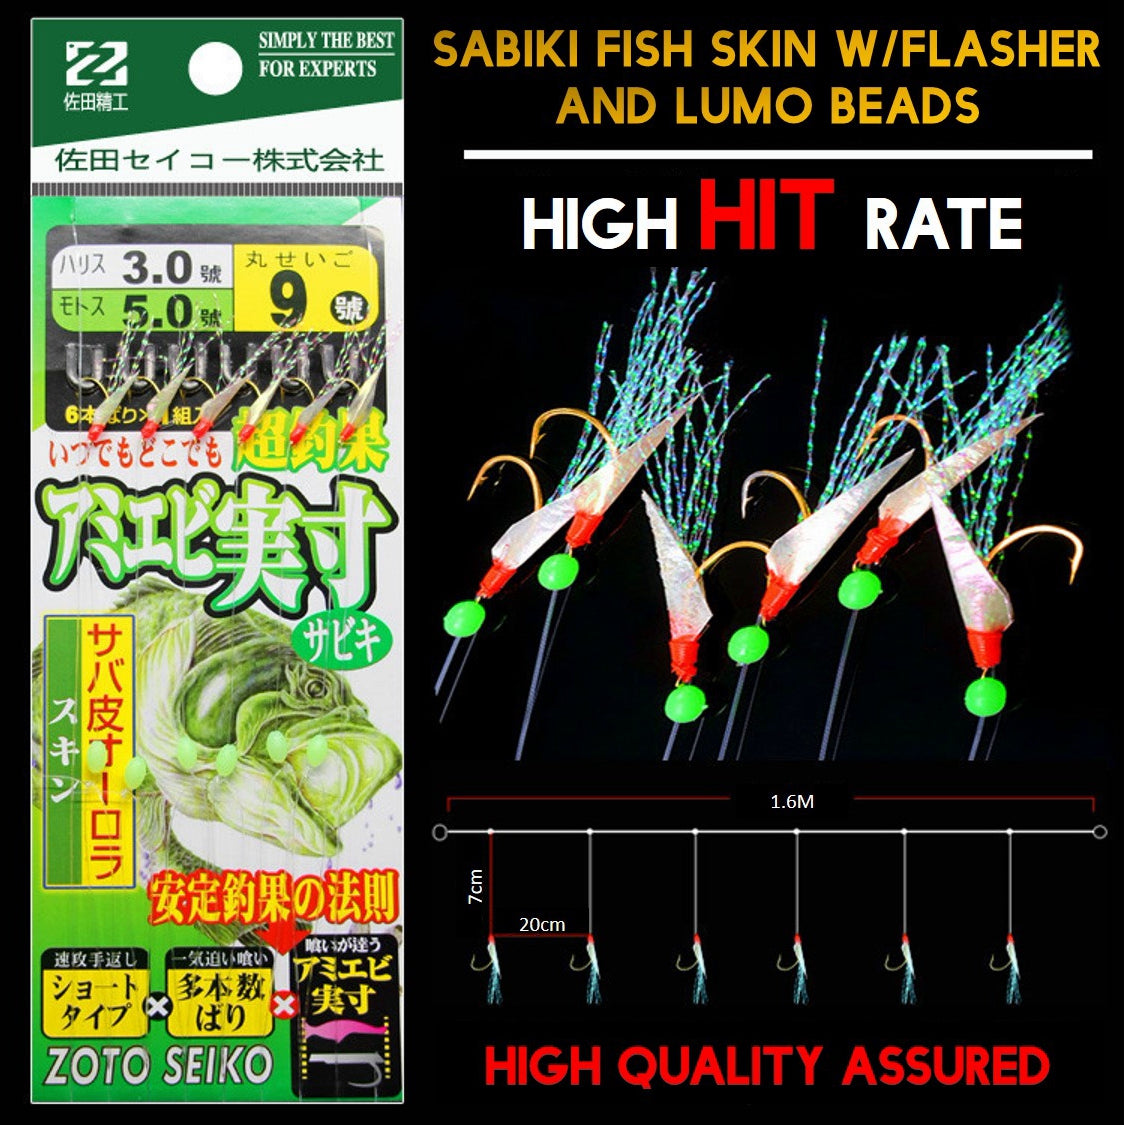 Sabiki Fish skin W/flasher and lumo beads